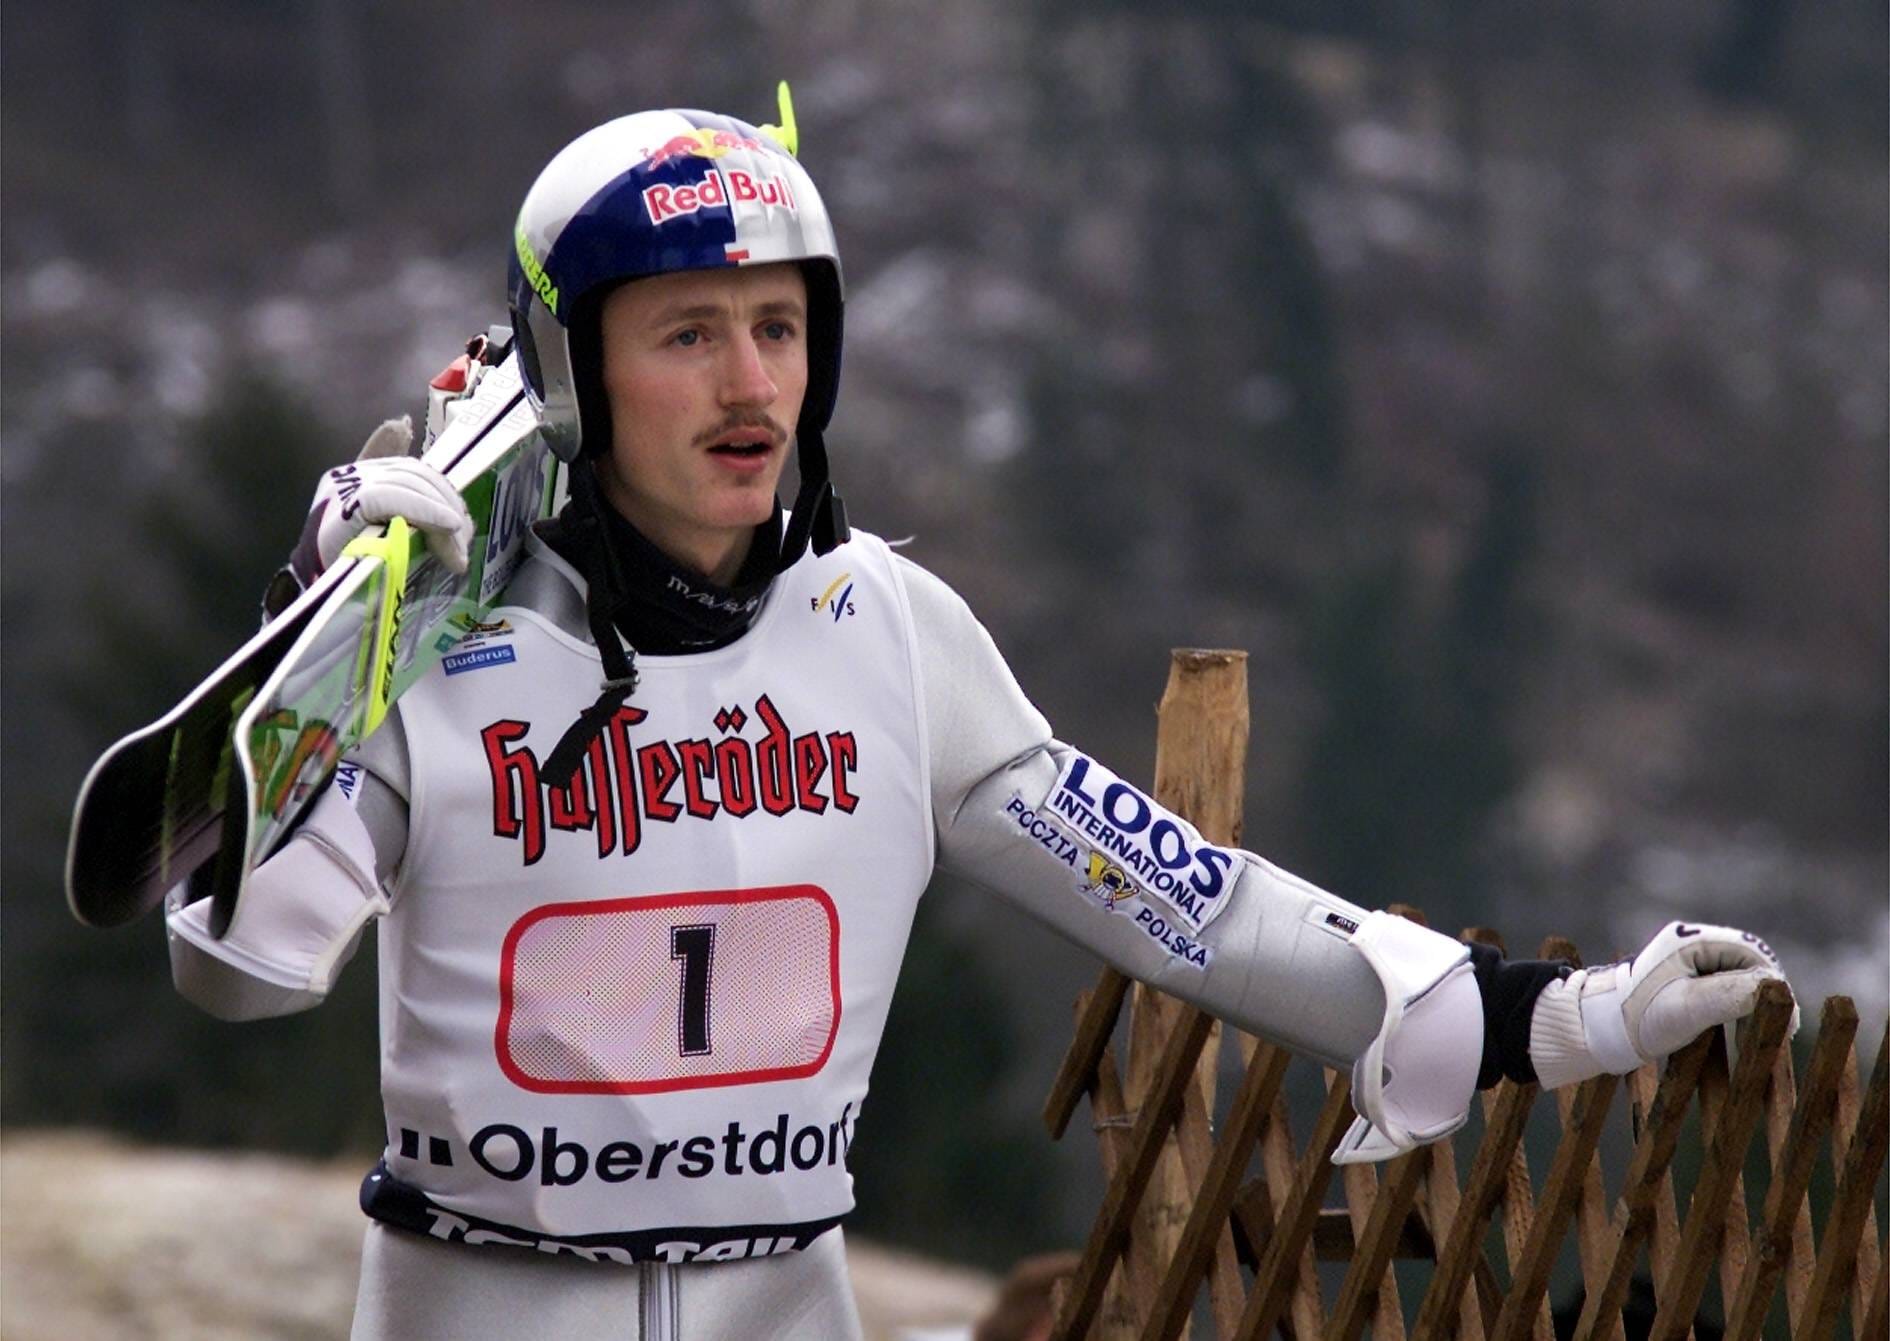 Adam Malysz: Tournee-Sieger 2001, vier Olympia-Medaillen, vier Mal Weltmeister – der Pole ist einer der erfolgreichsten Skispringer der Geschichte. Vom Überflieger an der Schanze wurde der Pole zum Manager für die Schanze.